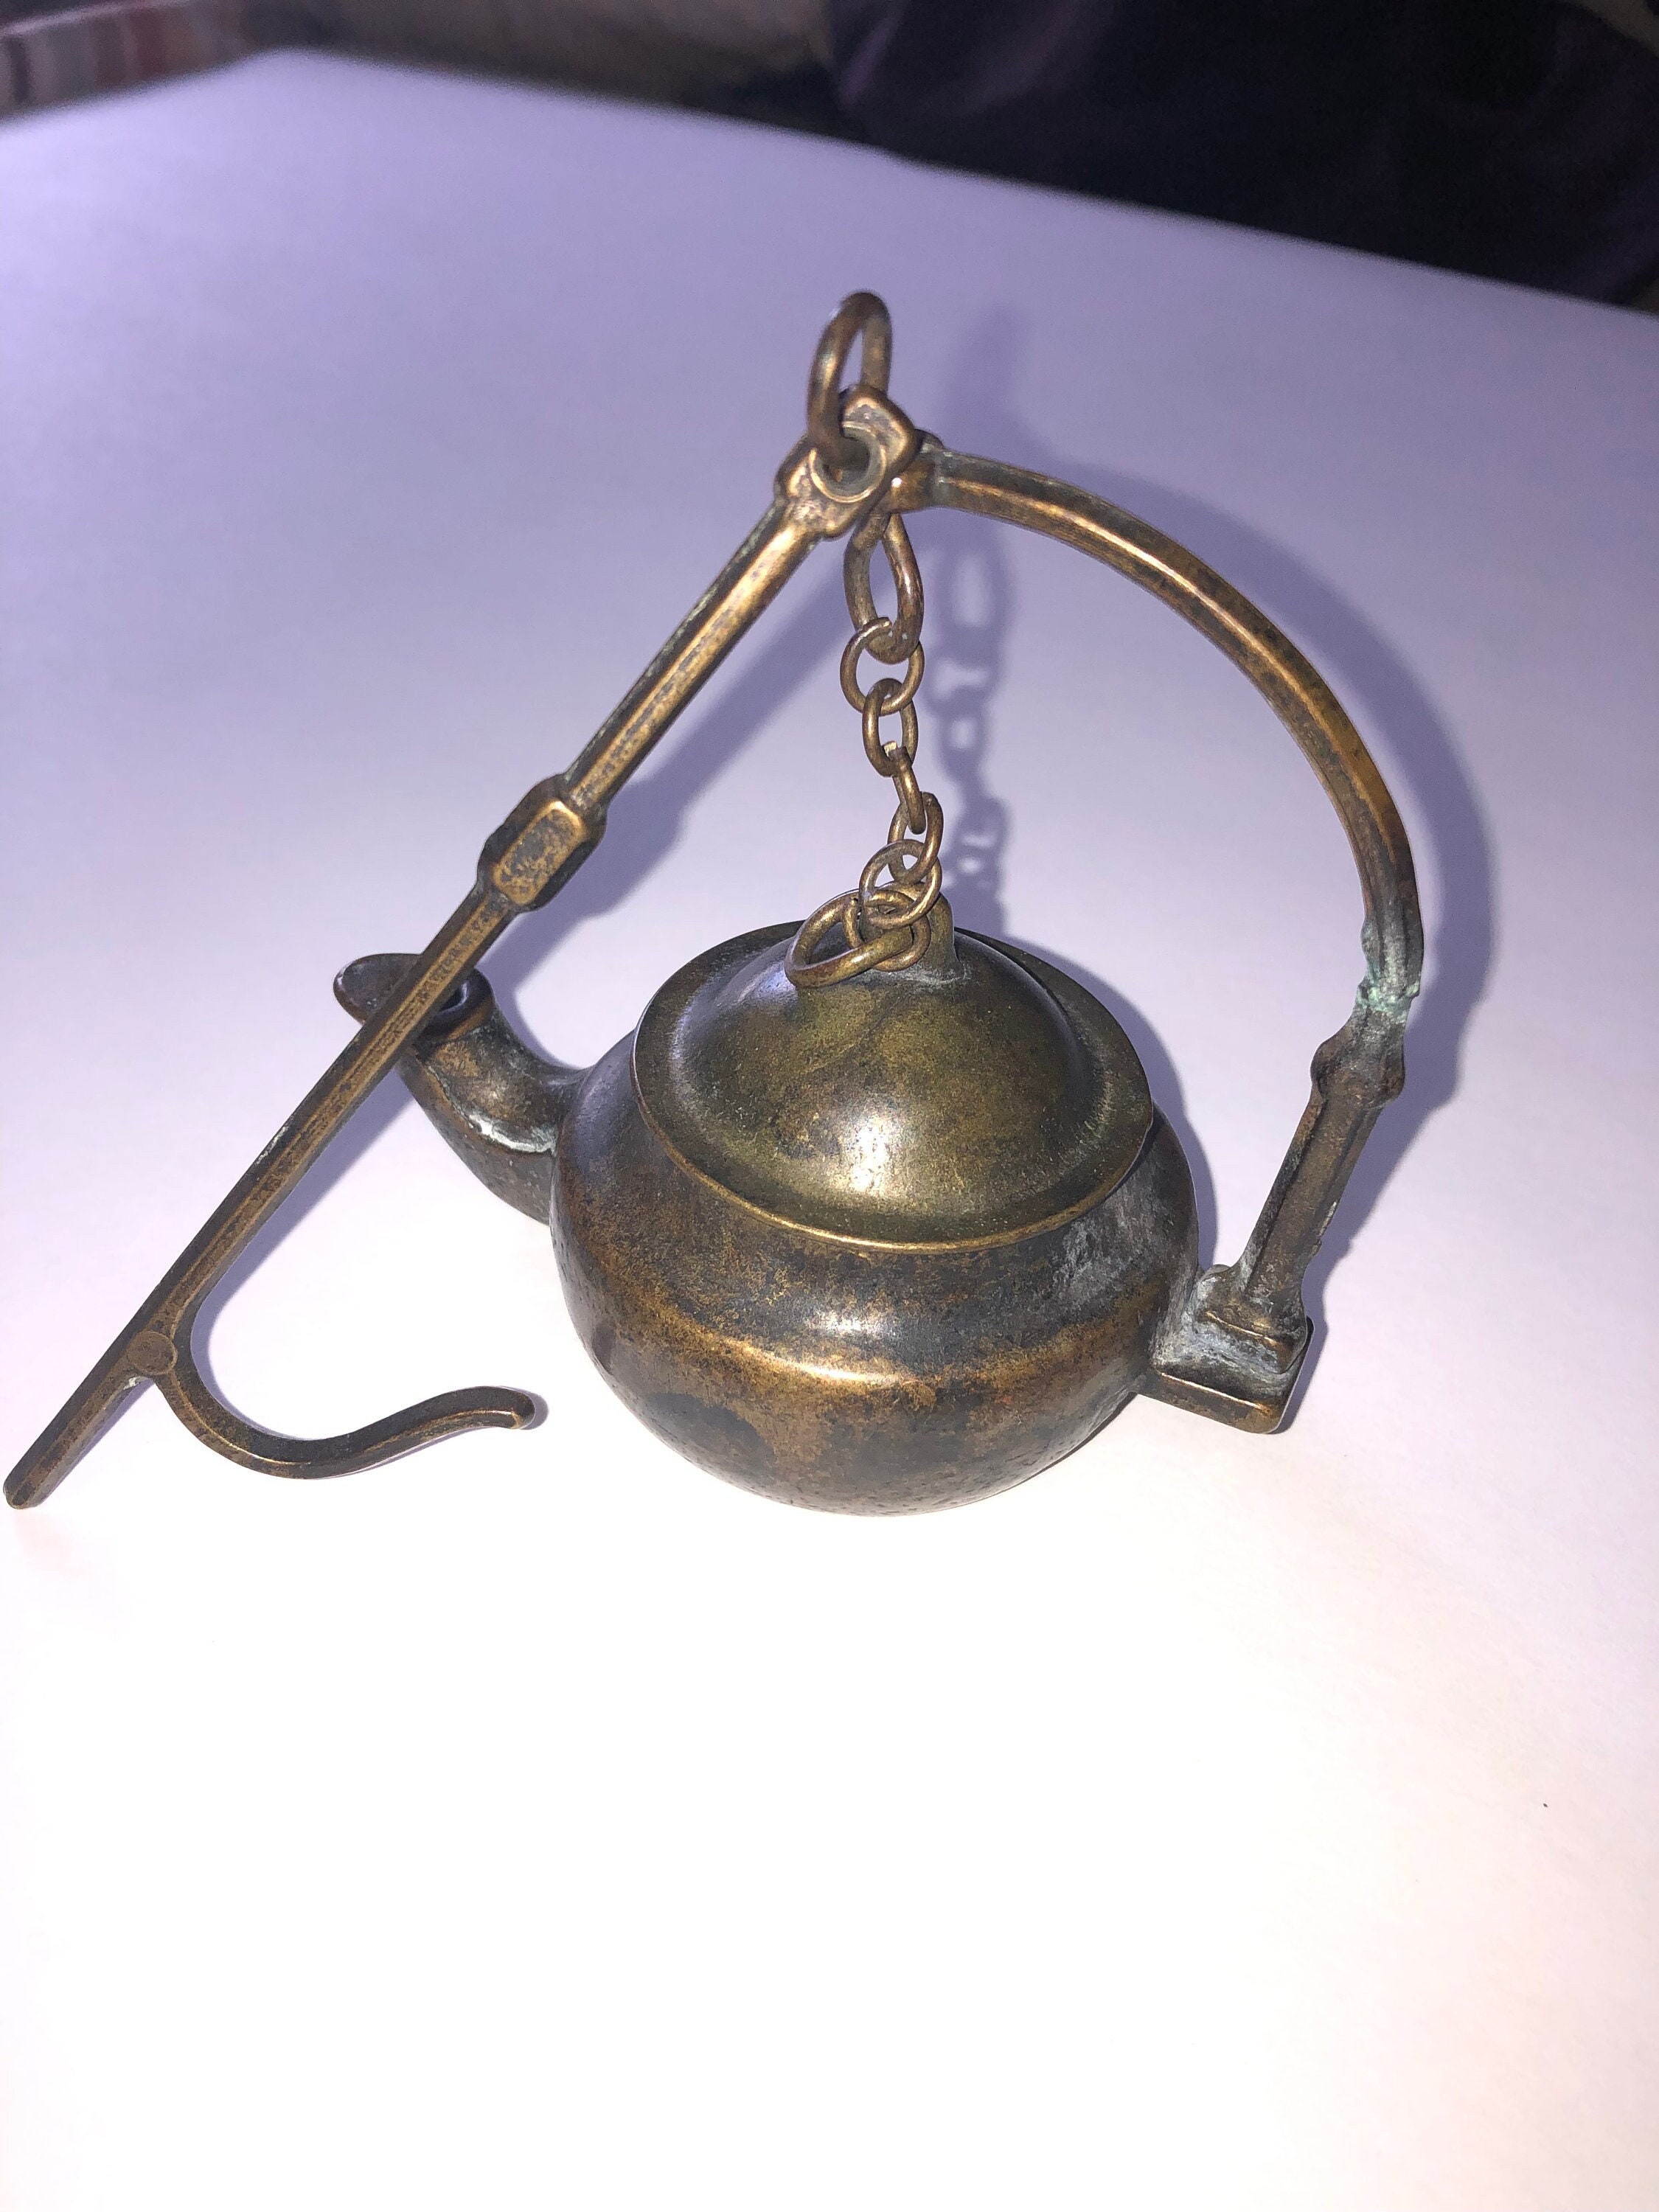 lampe à huile en bronze antique des années 1800, éclairage primitif, décor rustique